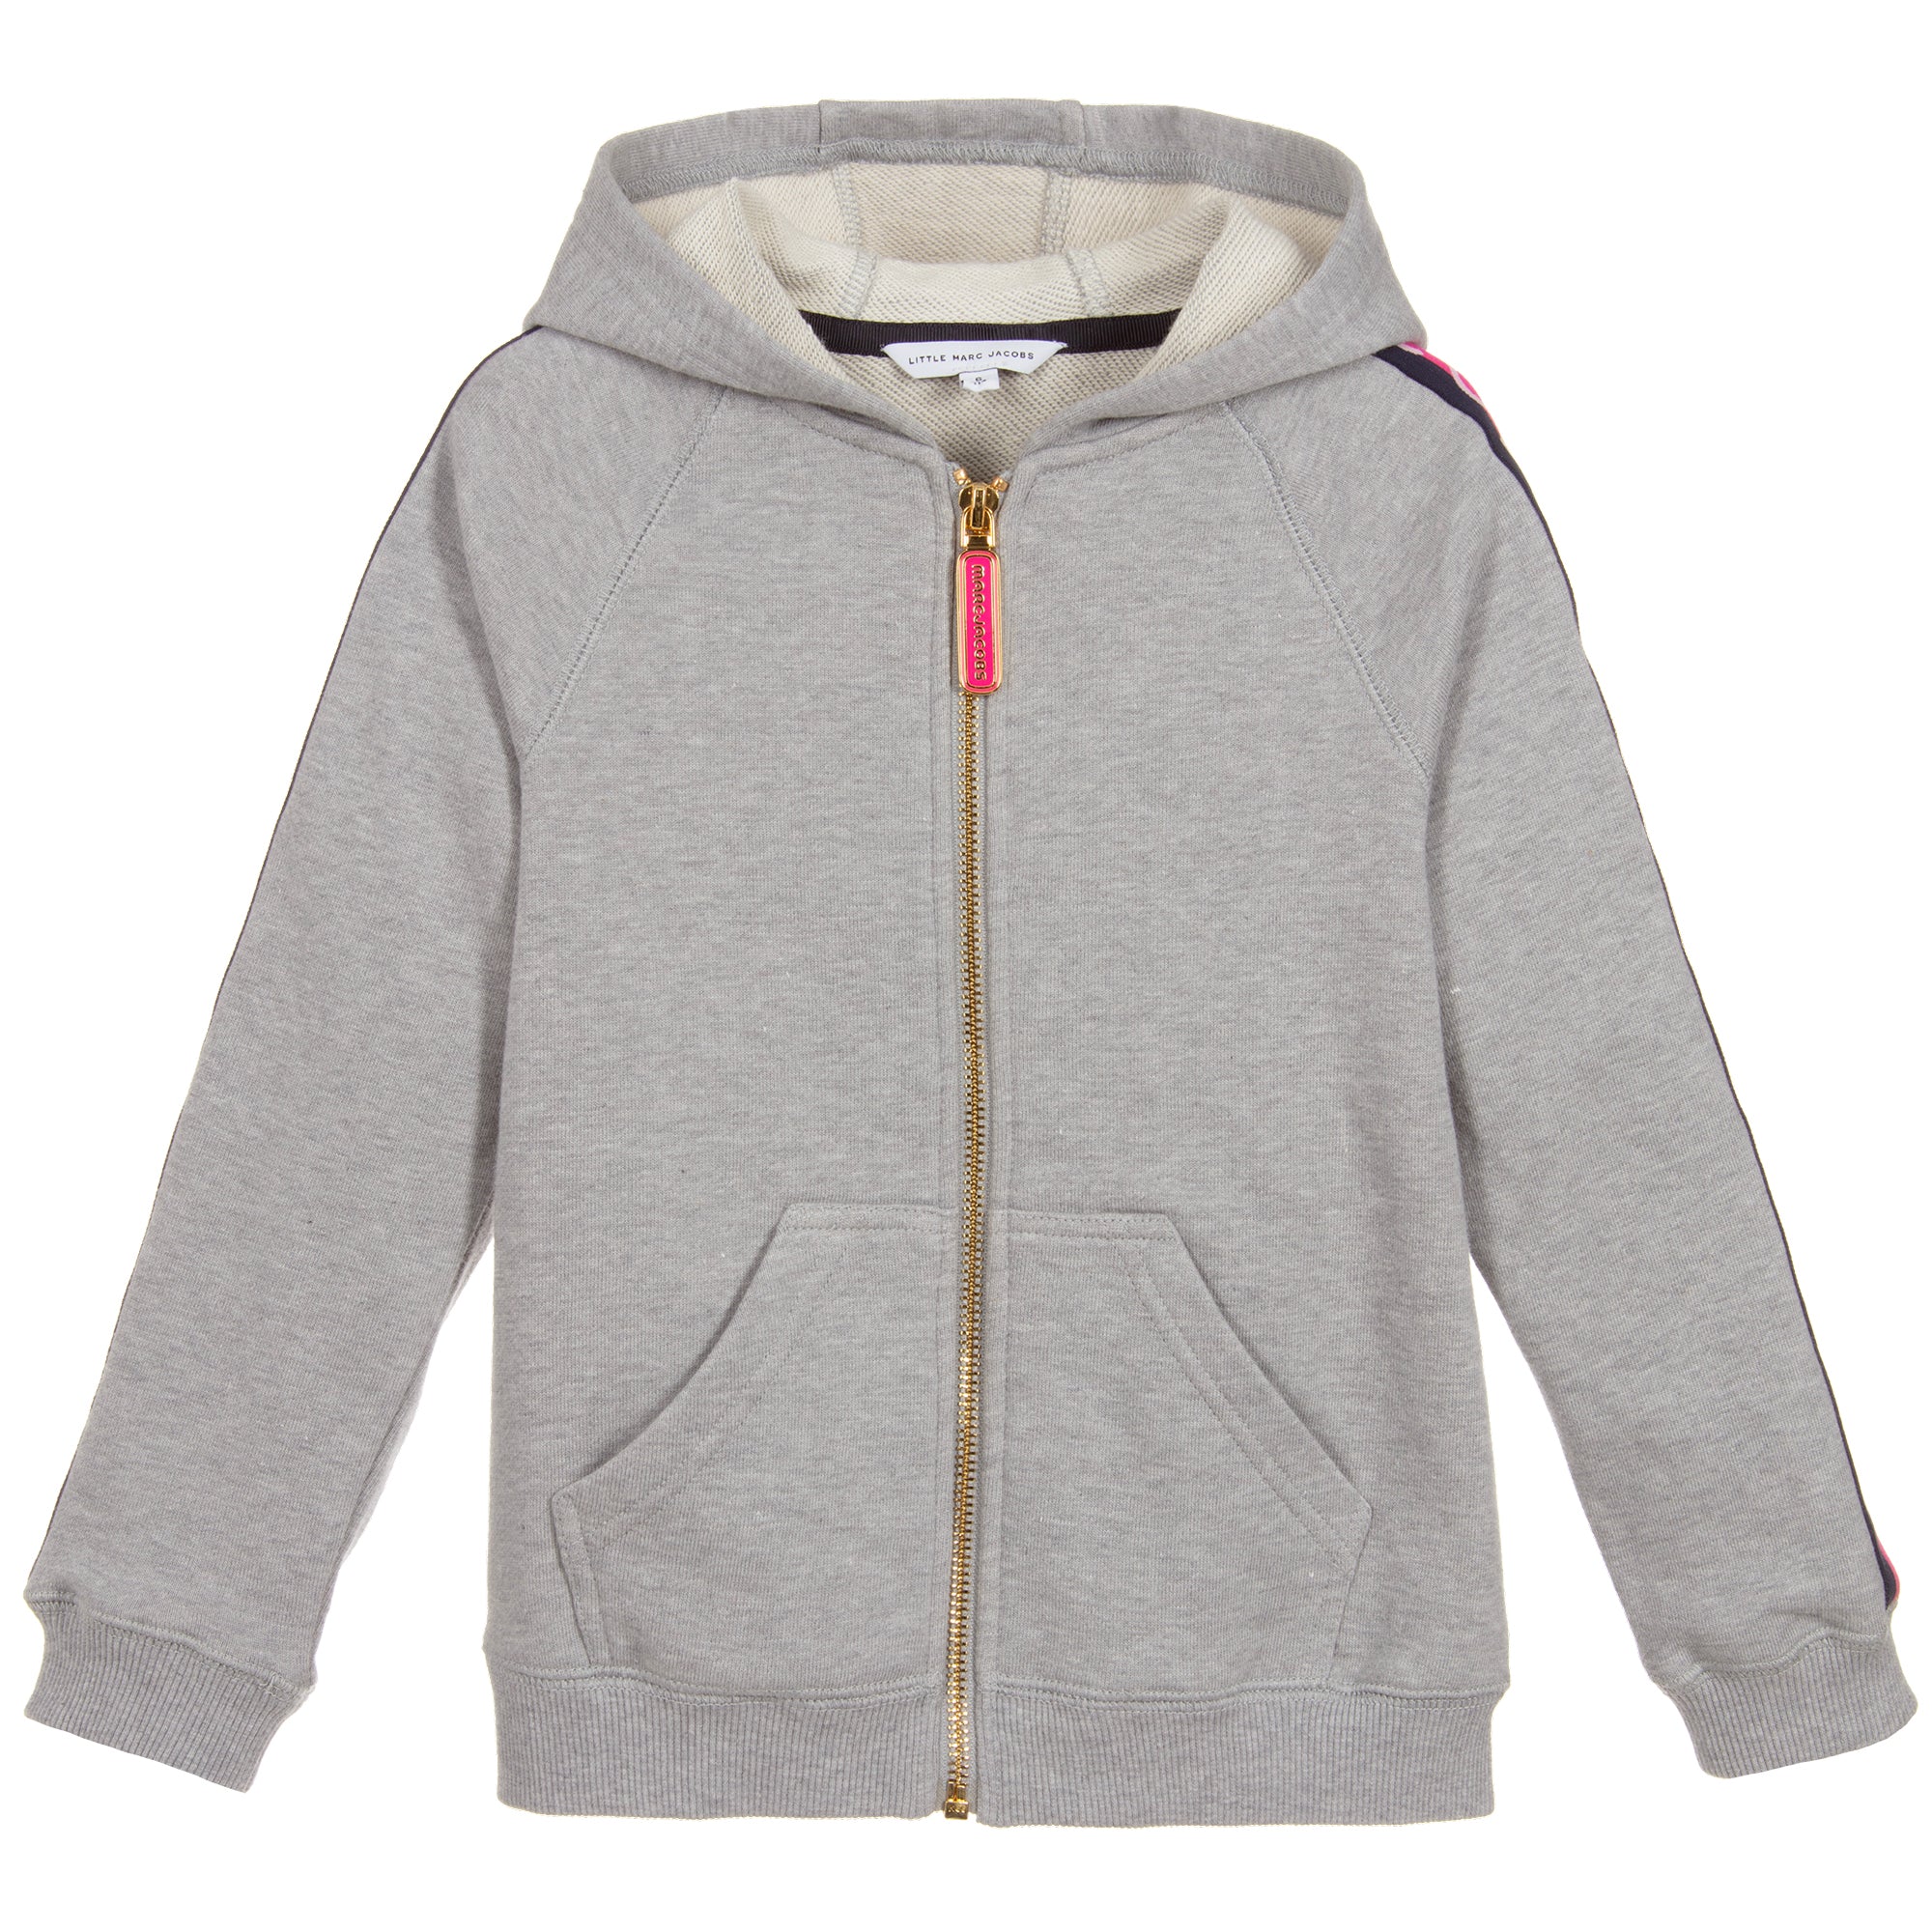 girls grey zip up hoodie